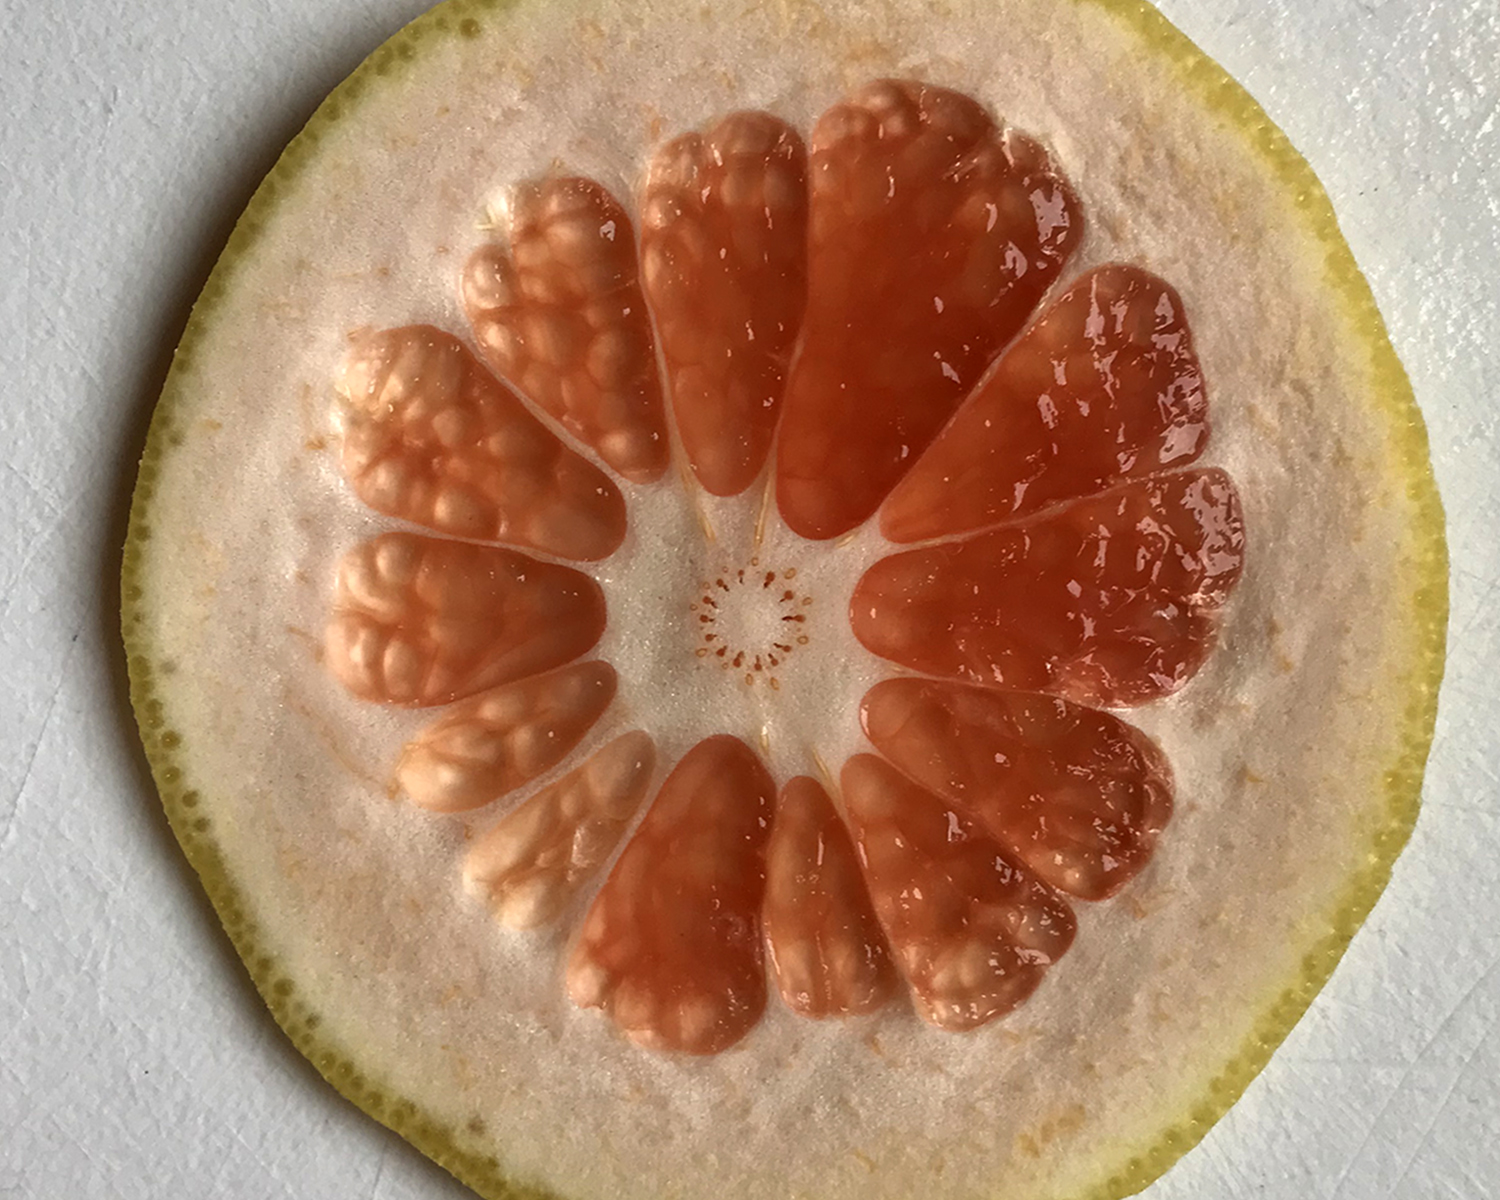 grapefruit_slice_032418